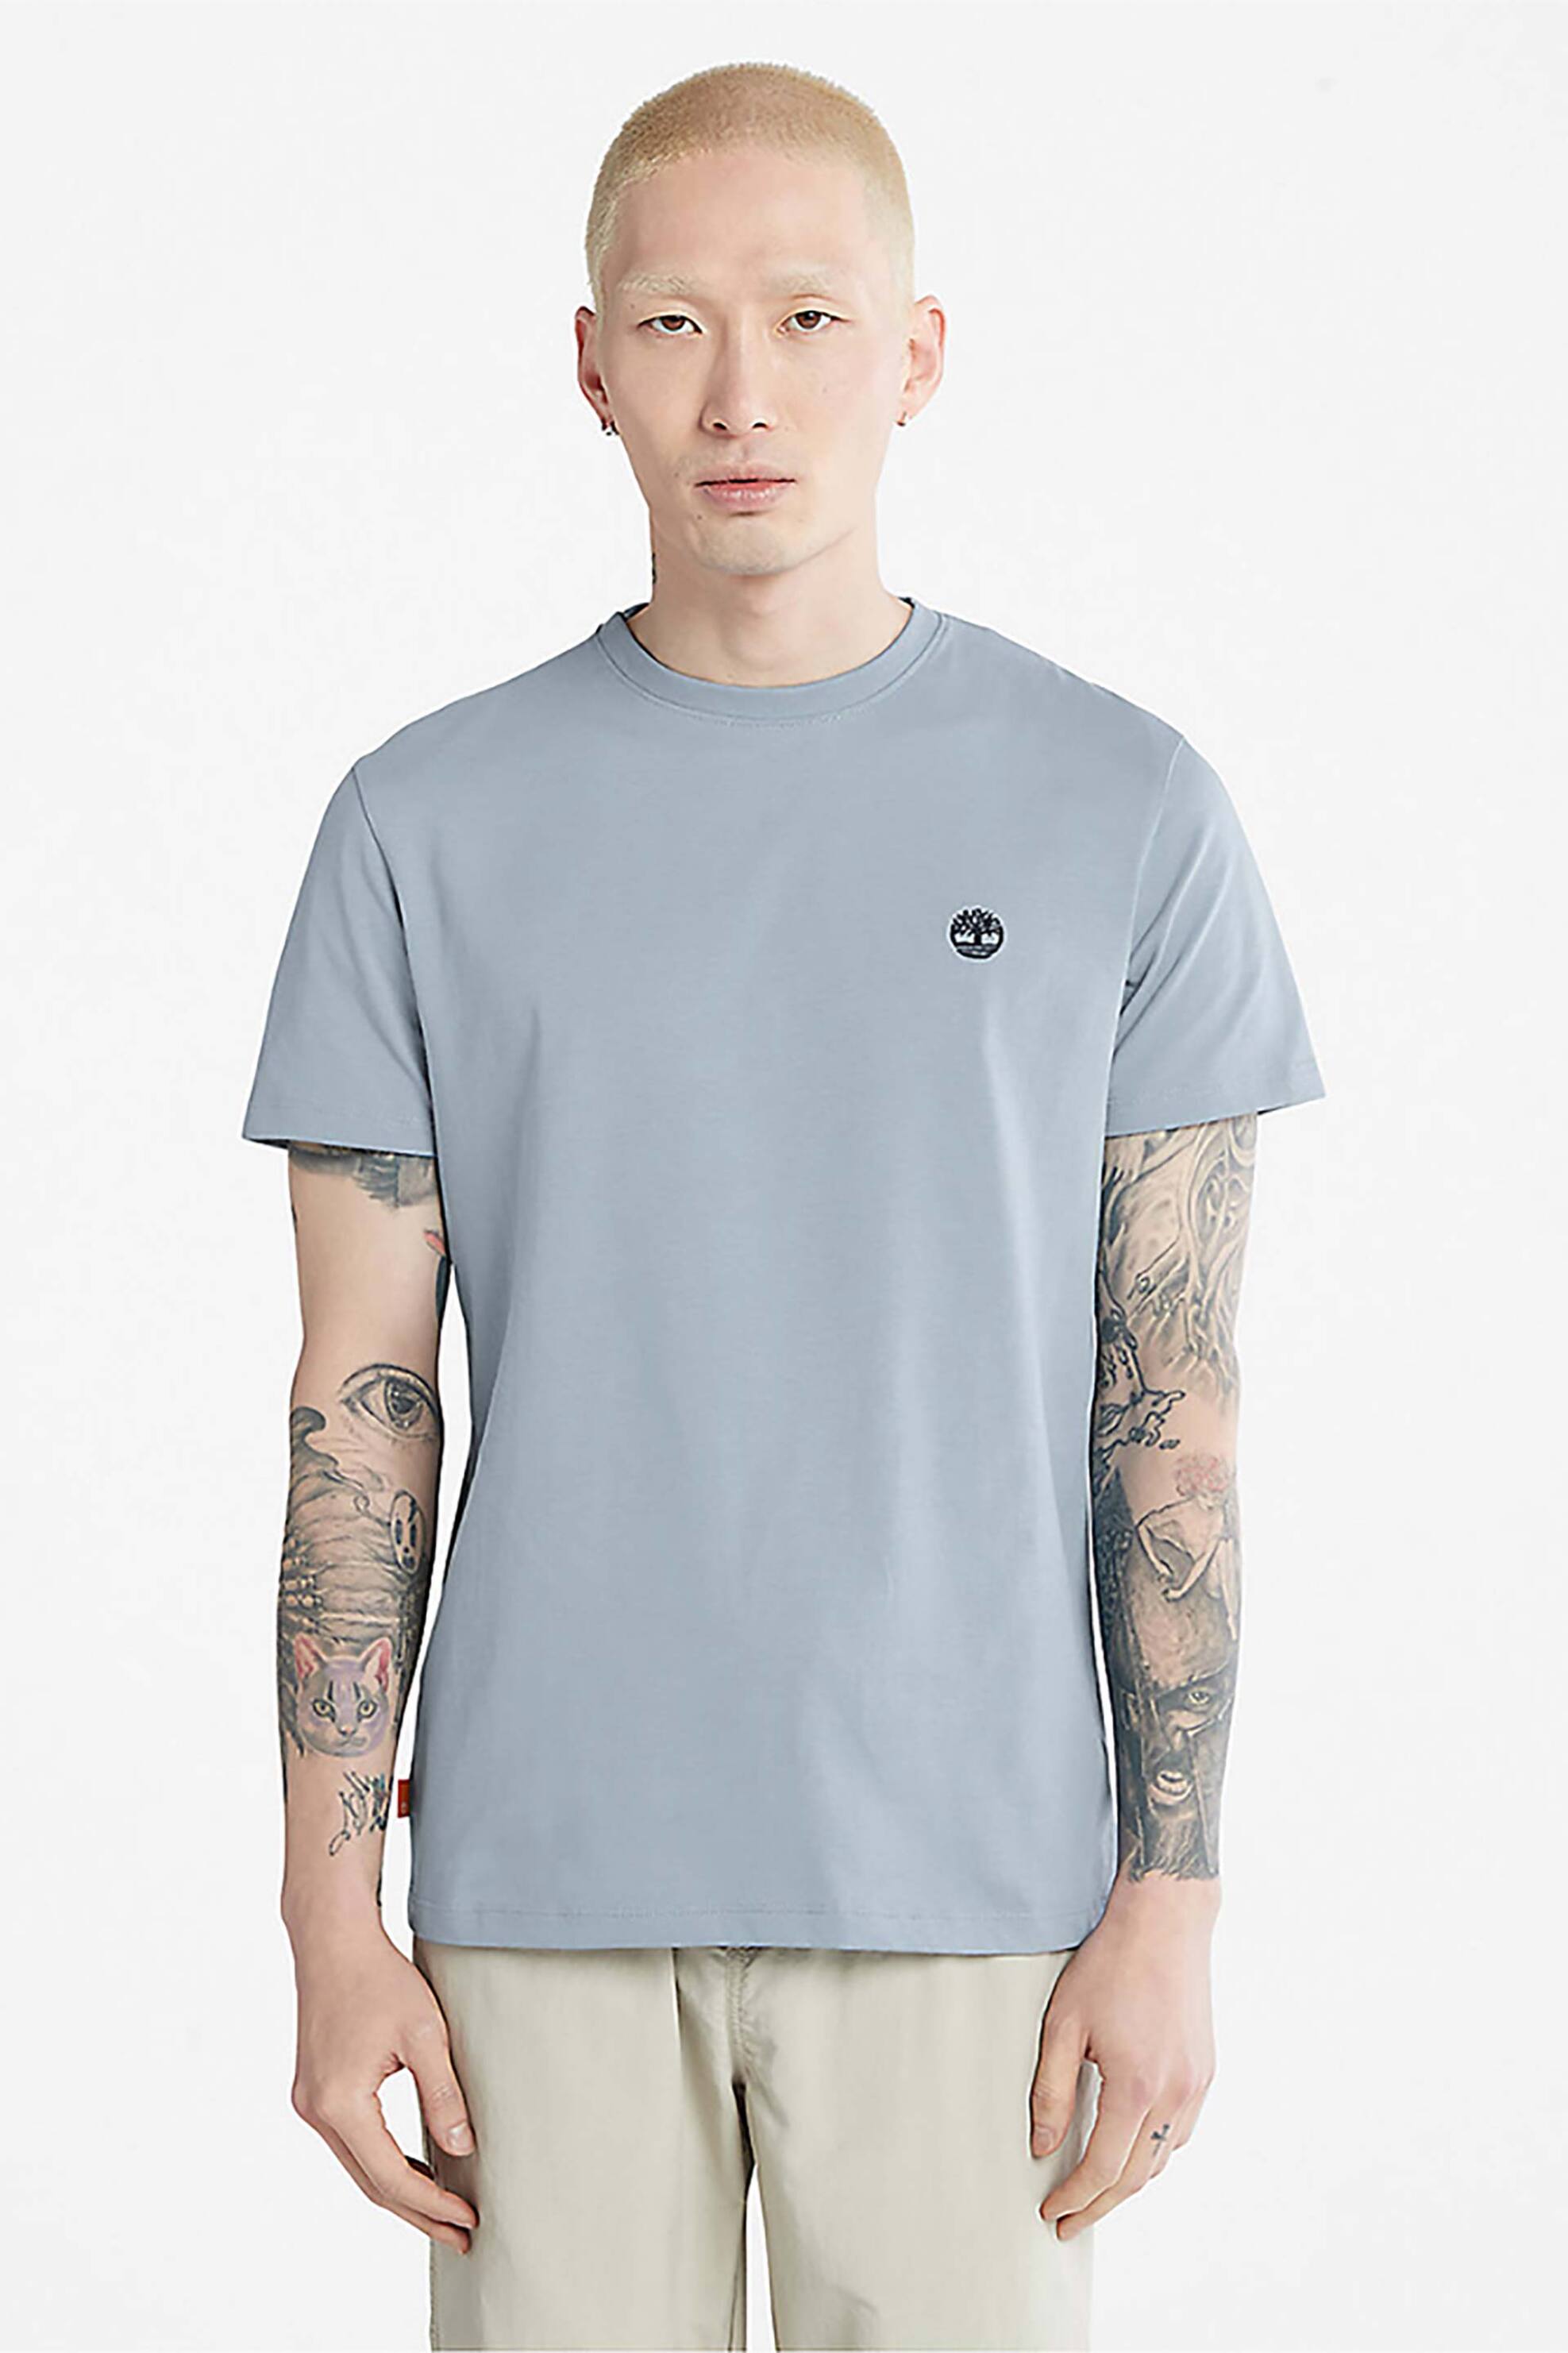 Ανδρική Μόδα > Ανδρικά Ρούχα > Ανδρικές Μπλούζες > Ανδρικά T-Shirts Timberland ανδρικό T-Shirt με κεντημένο λογότυπο ''Dunstan River'' - TB0A2BPR9401 Γαλάζιο